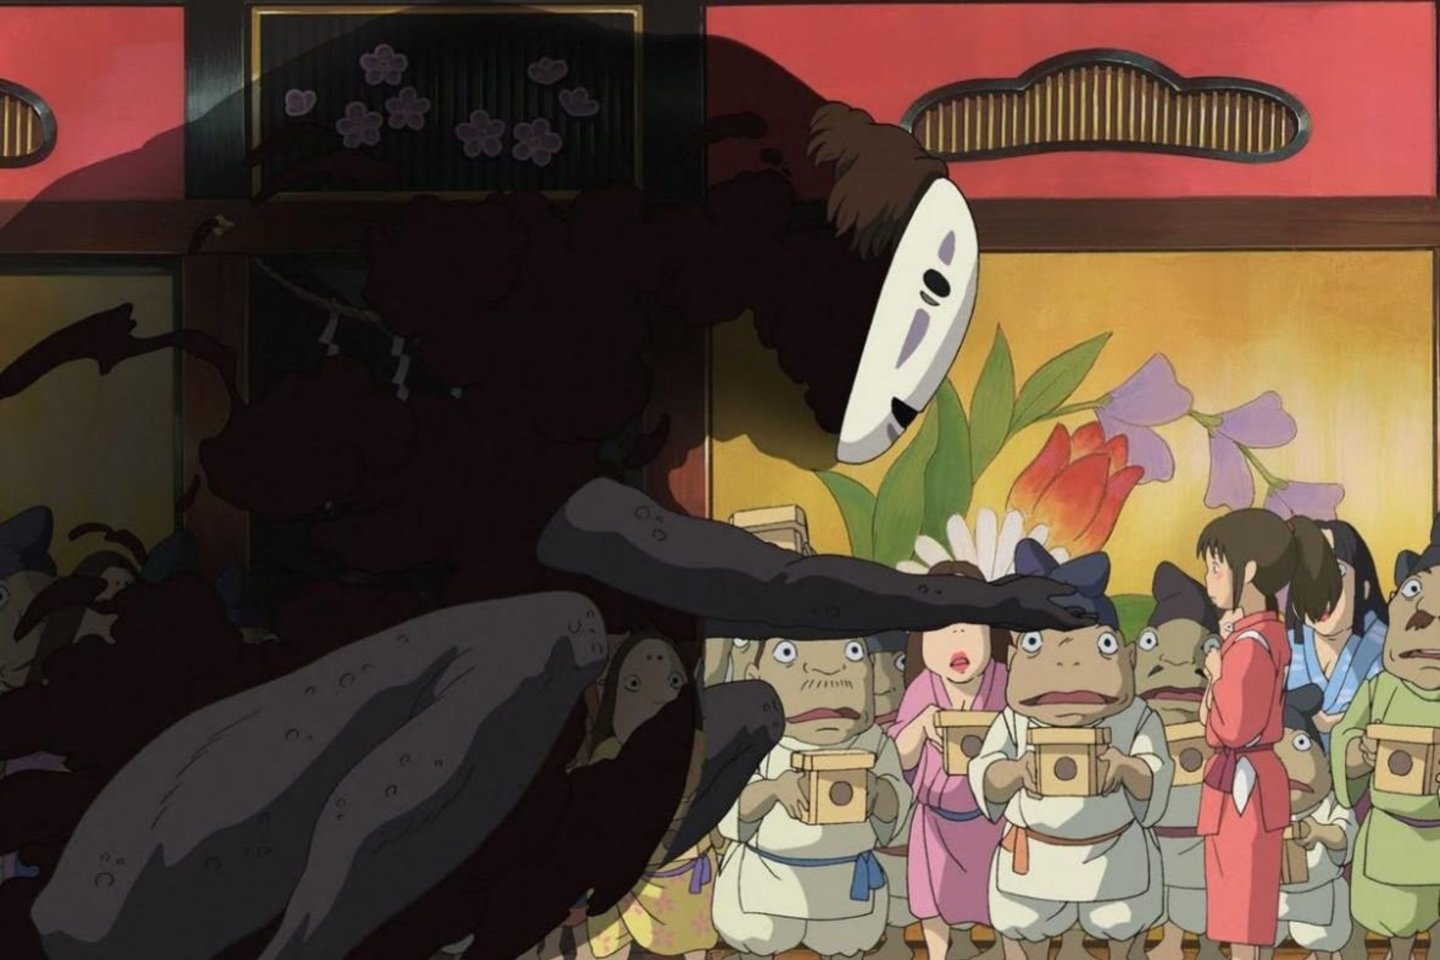  Vienas geriausių animacinių filmų „Spirited Away“ ne linksmina, o kviečia į fantazijos ir laisvės pasaulius, neatsiejamus nuo šiurpo ir liūdesio.<br>Studio Ghibli iliustr.